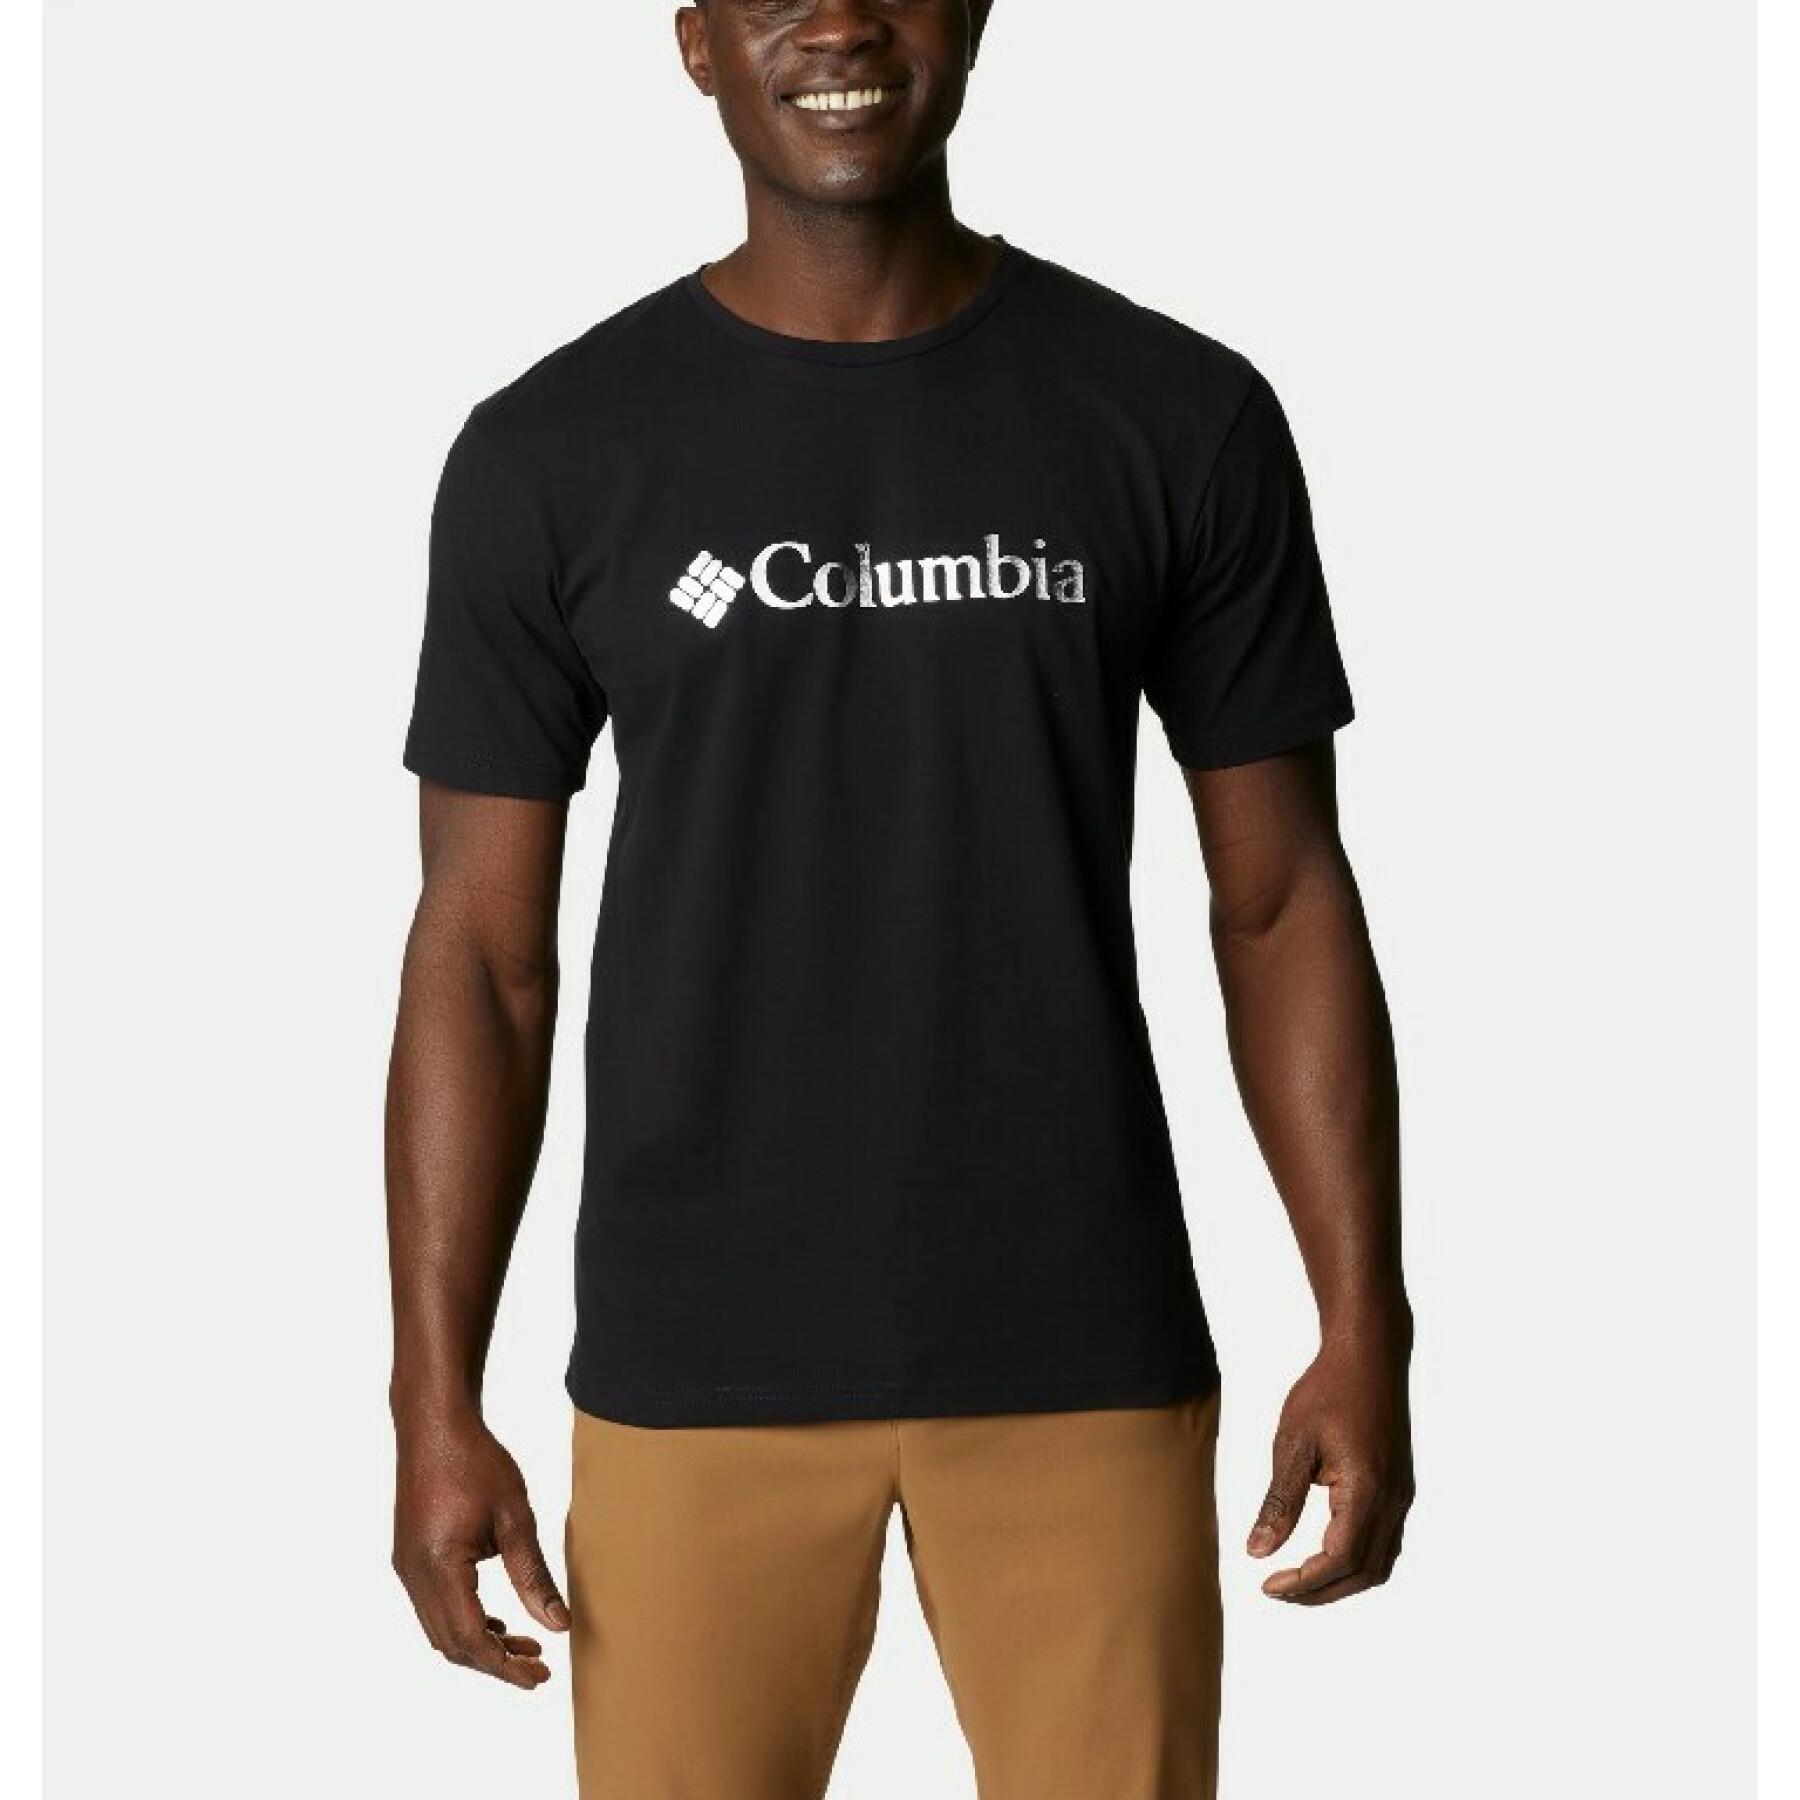 Camiseta Columbia Pacific Croing Graphic